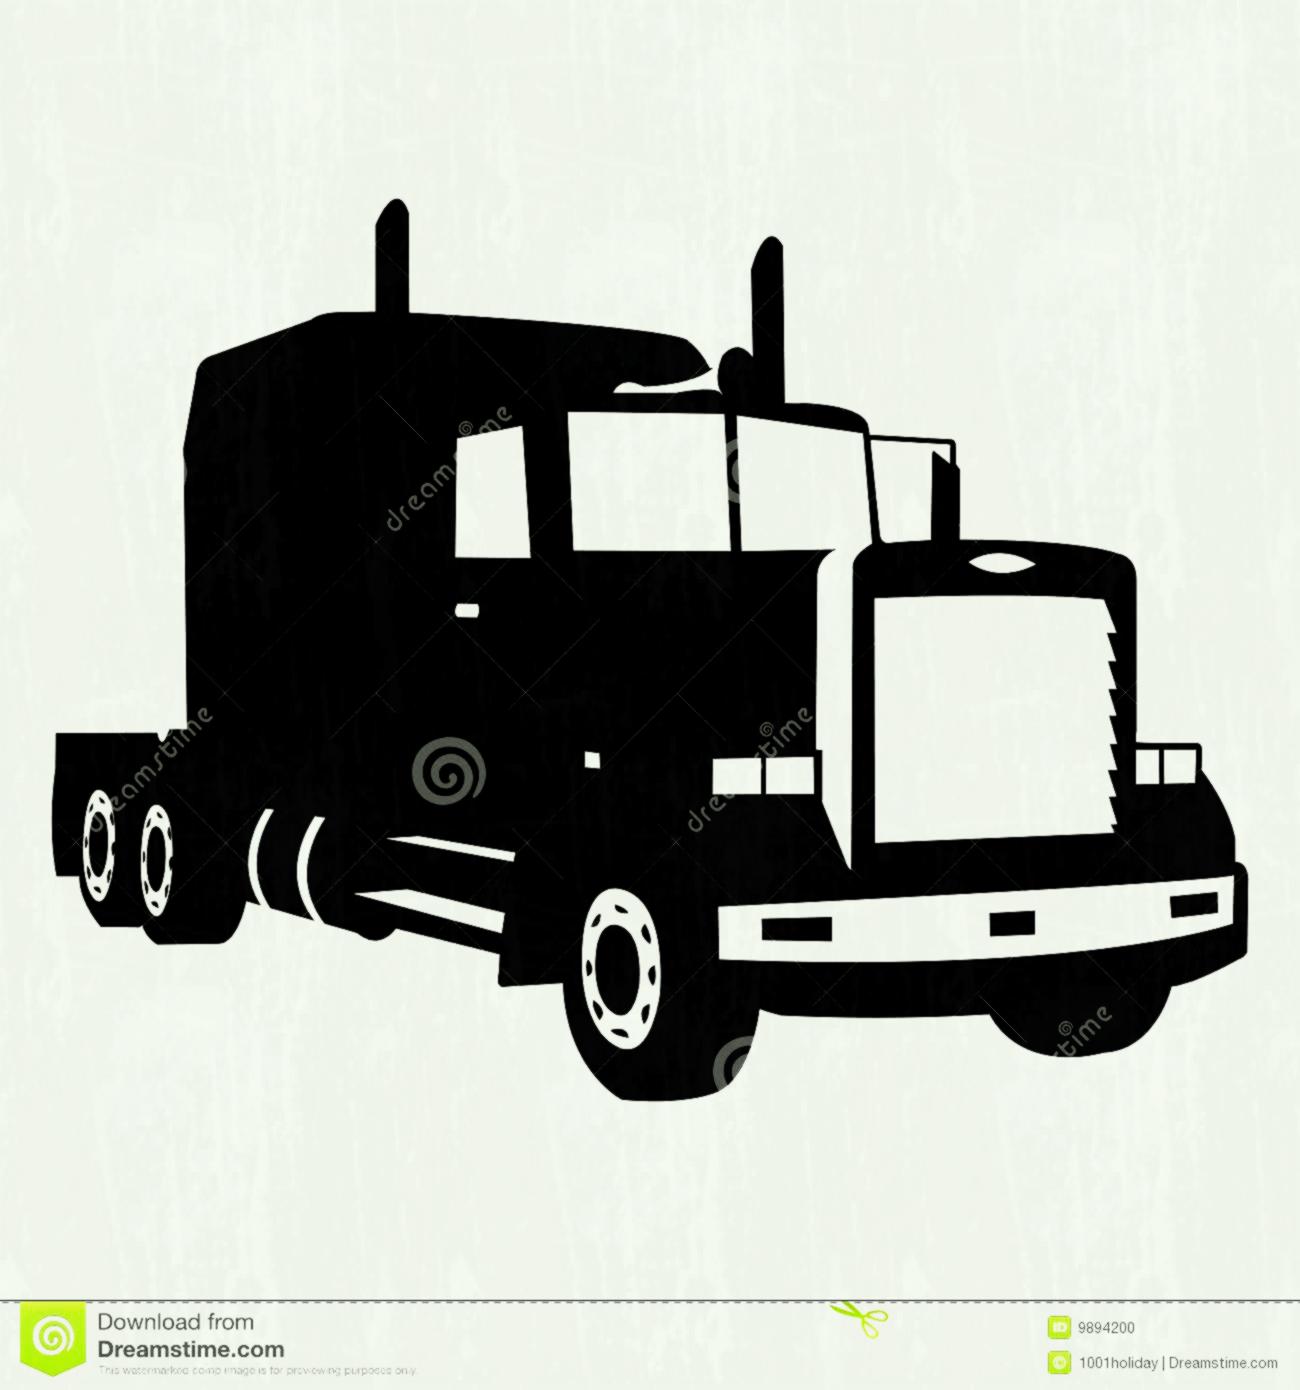 Peterbilt Truck Vector at GetDrawings Free download